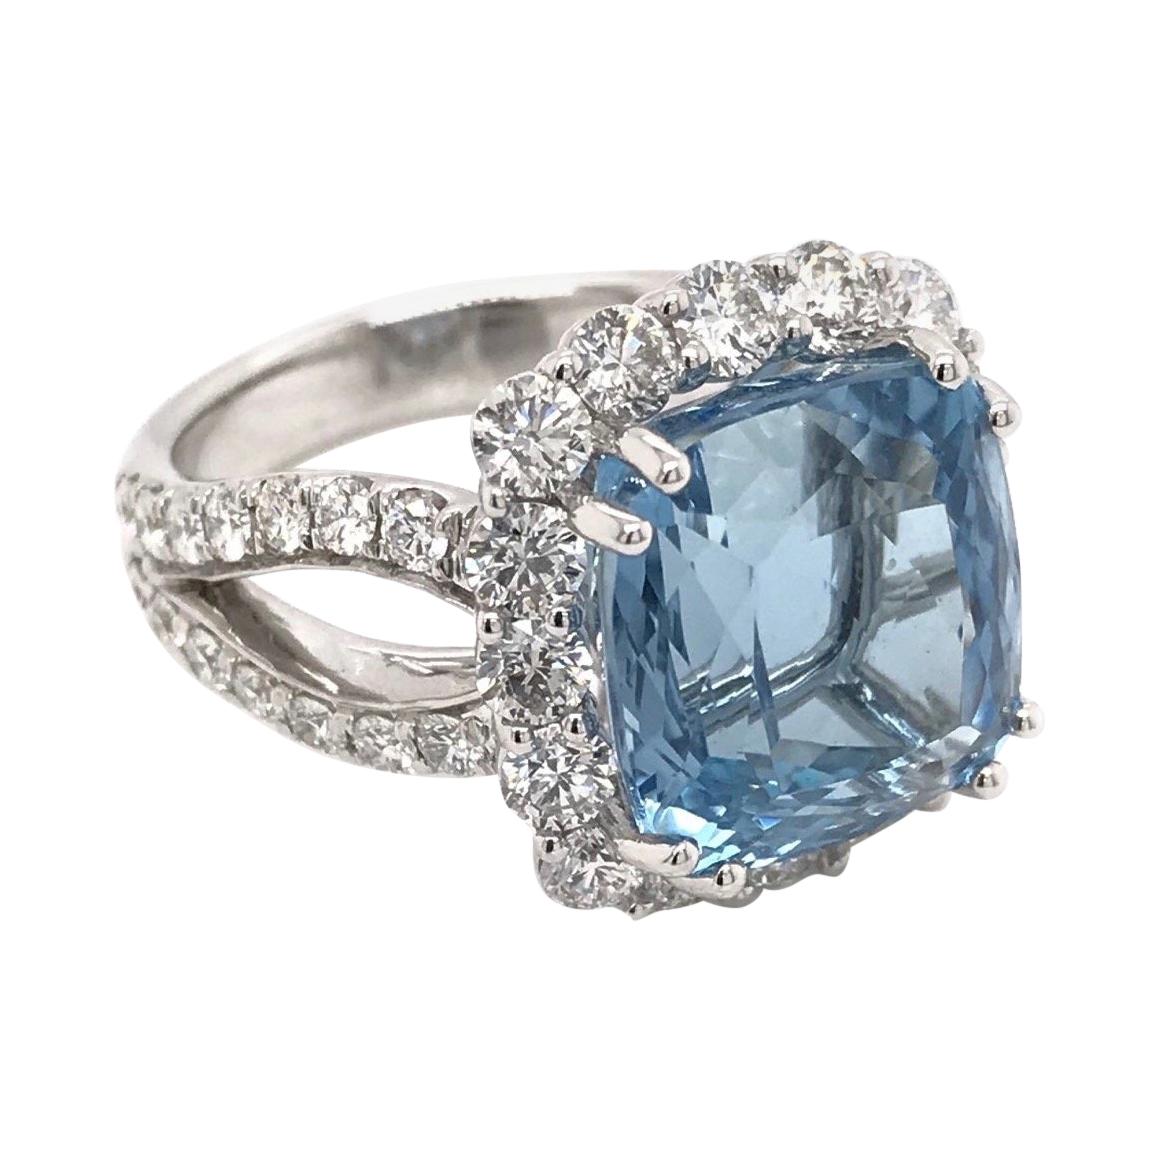 7.94 Carat Santa Maria Aquamarine and Diamond Ring